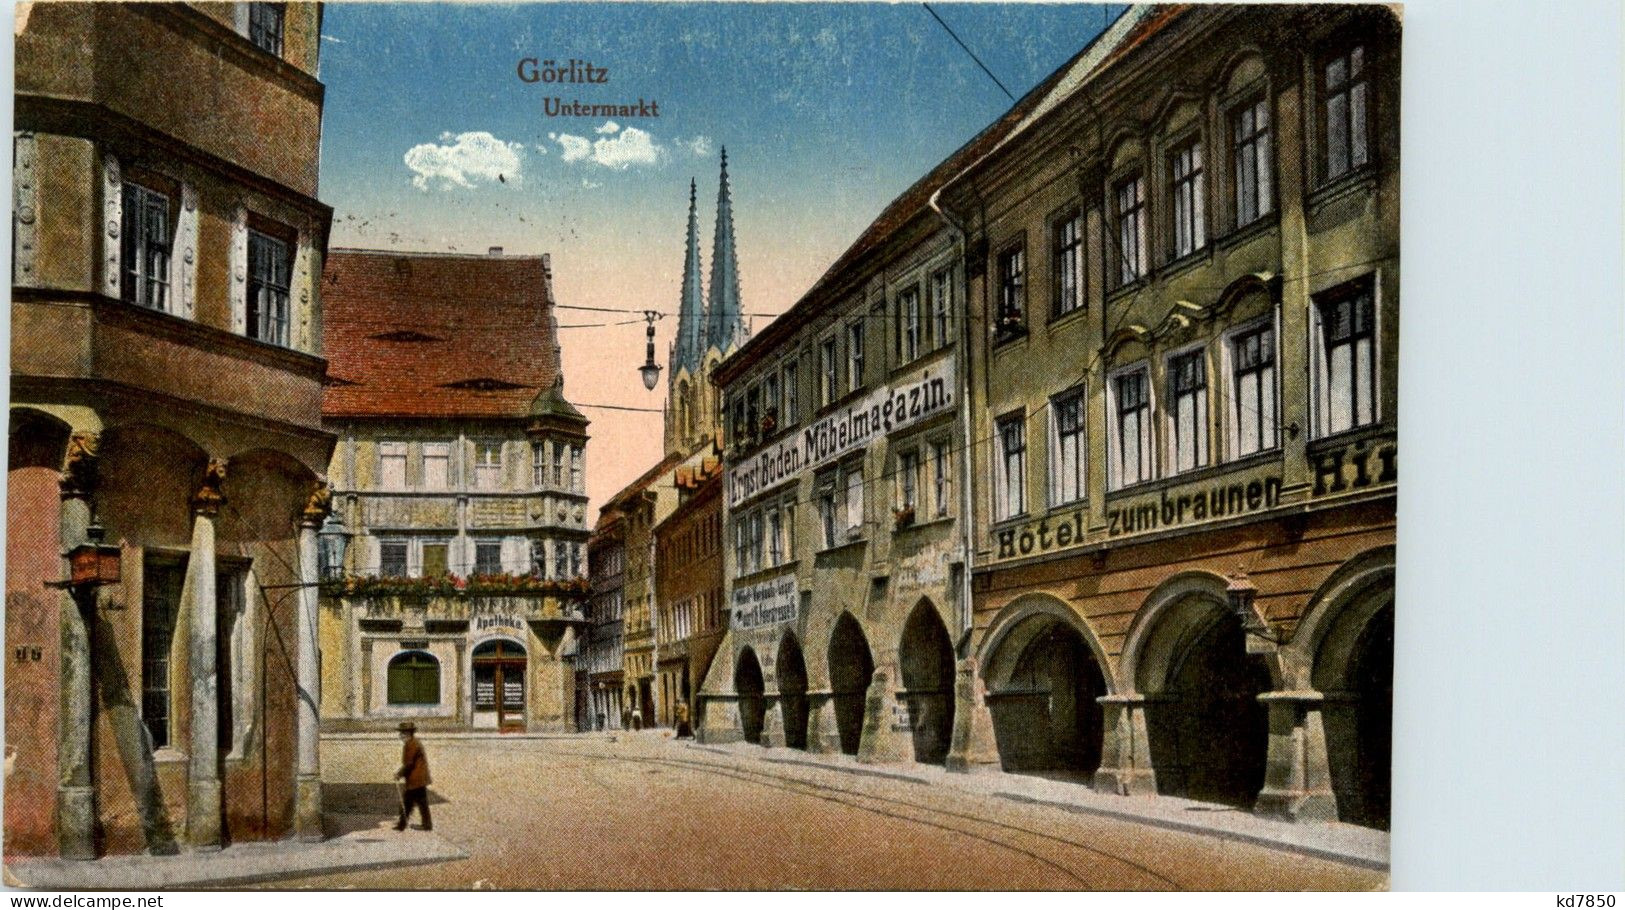 Görlitz - Untermarkt - Goerlitz